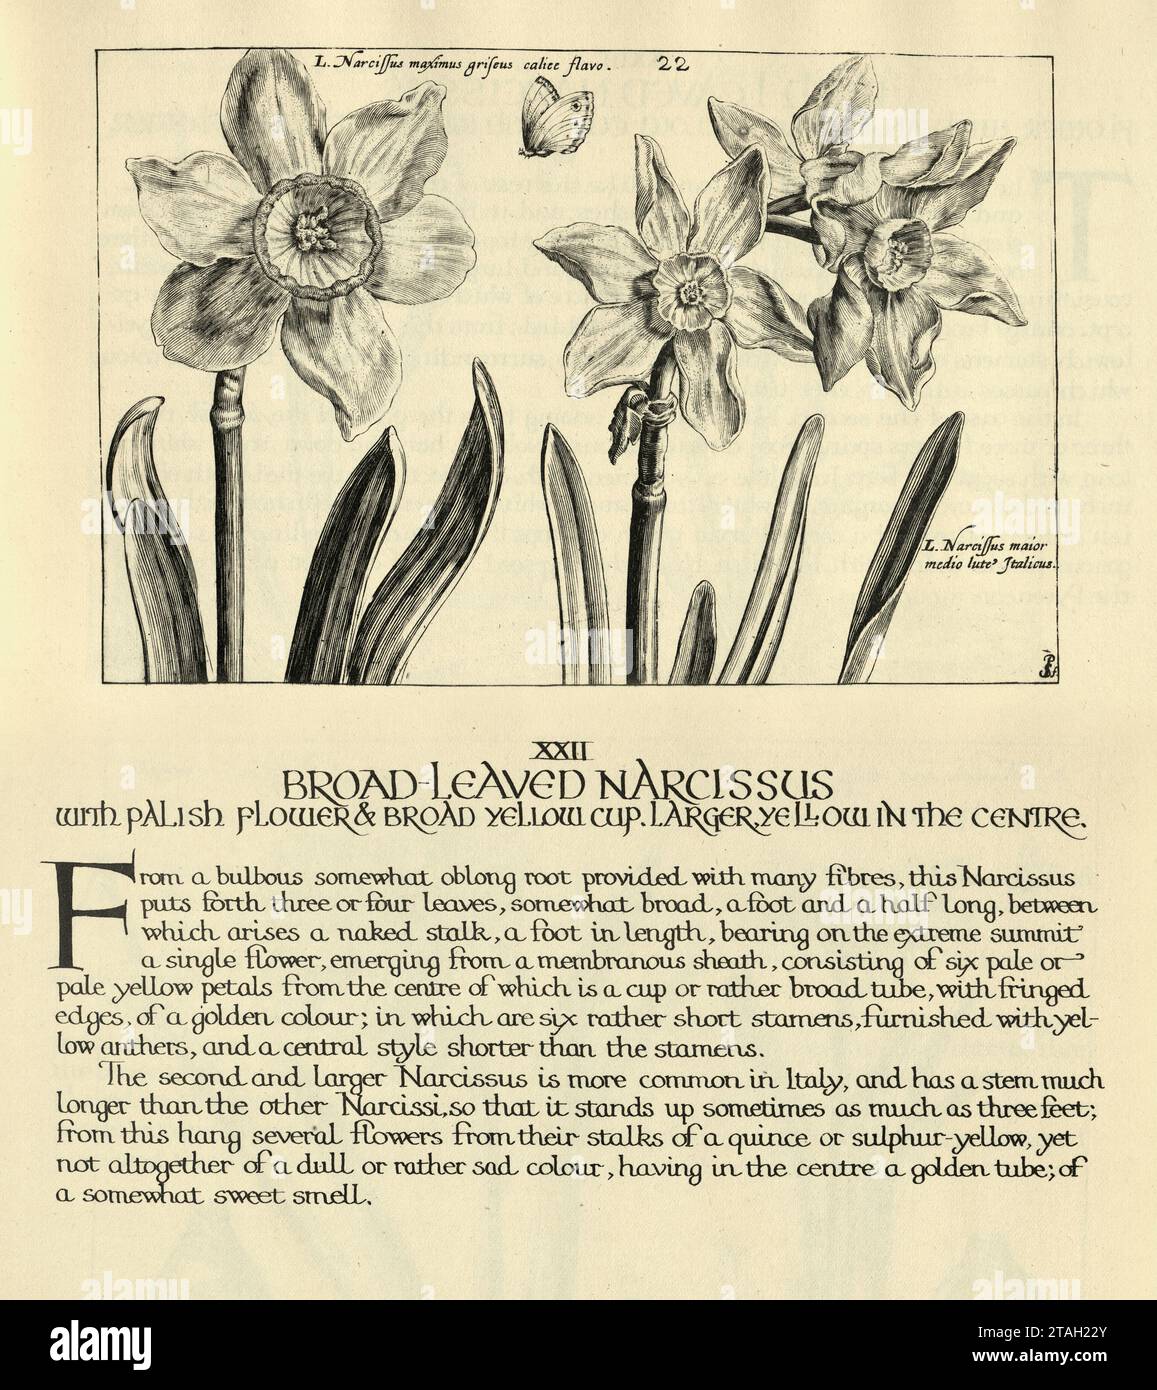 Estampe botanique de Narcisse tenuifolius à feuilles de Braod, fleur de jonquille, d'Hortus Floridus par Crispin de passe, illustration vintage, 17e Centu Banque D'Images